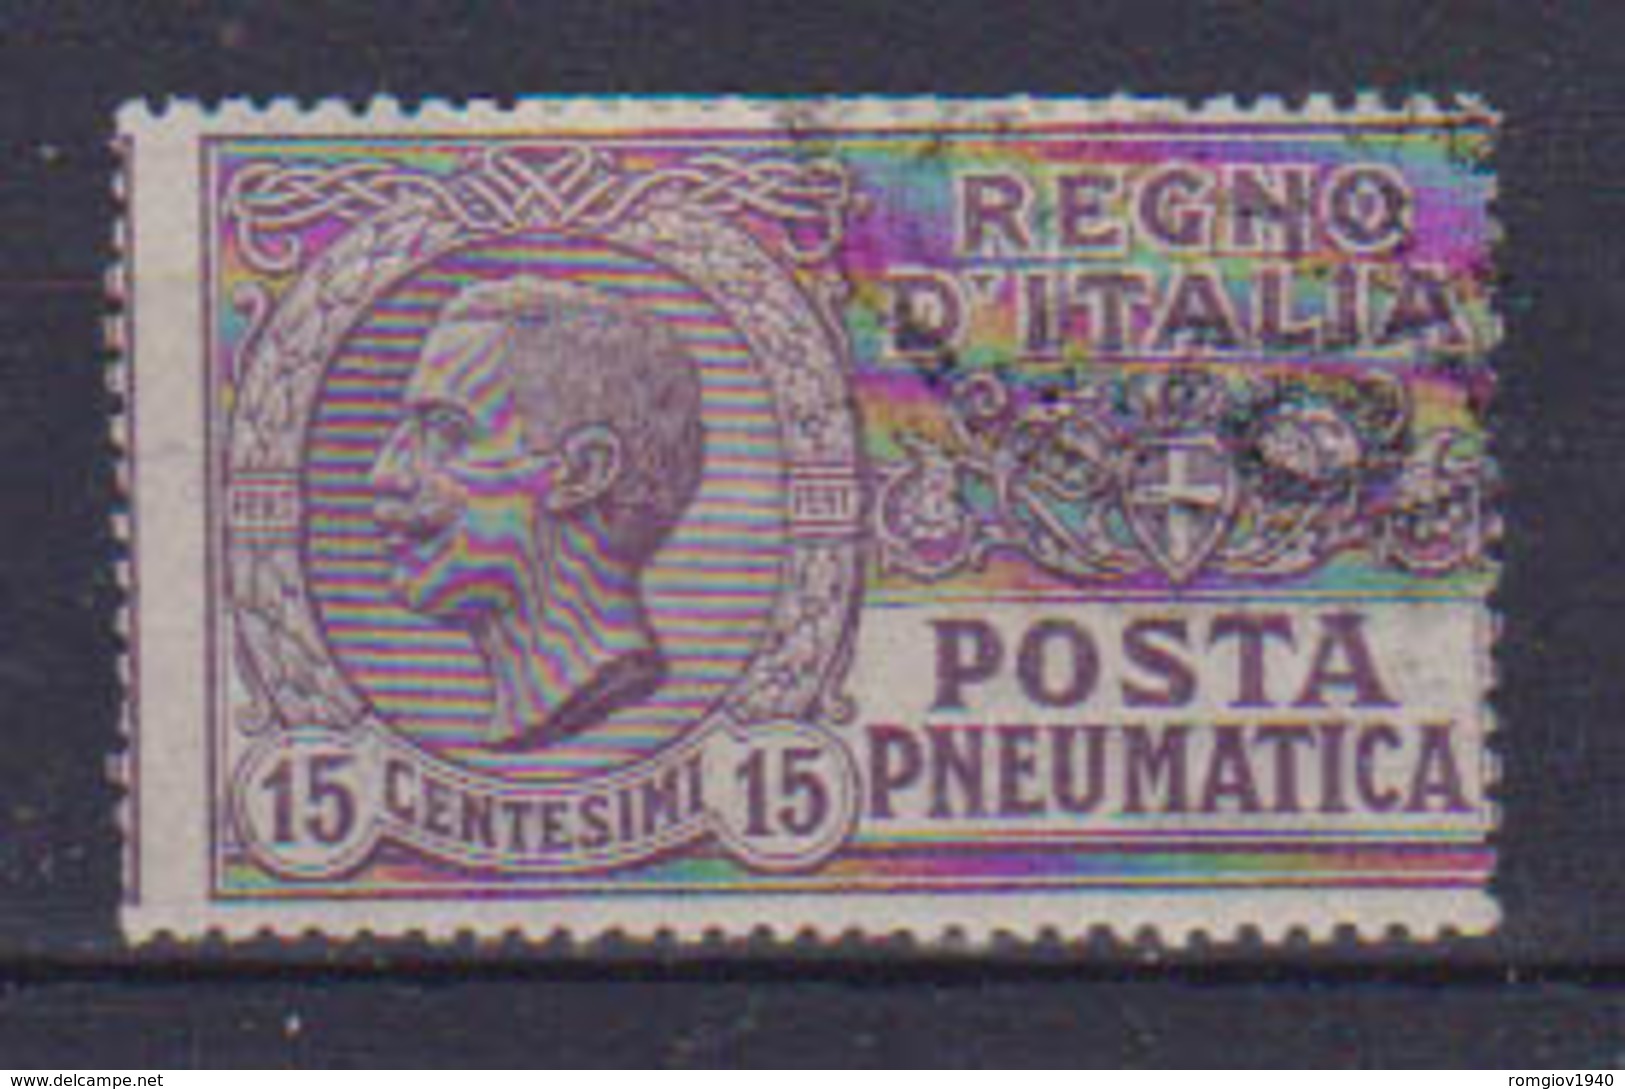 REGNO D'ITALIA POSTA PNEUMATICA 1913-23  EFFIGE DI V.EMANUELE III  SASS. 2 USATO VF - Poste Pneumatique